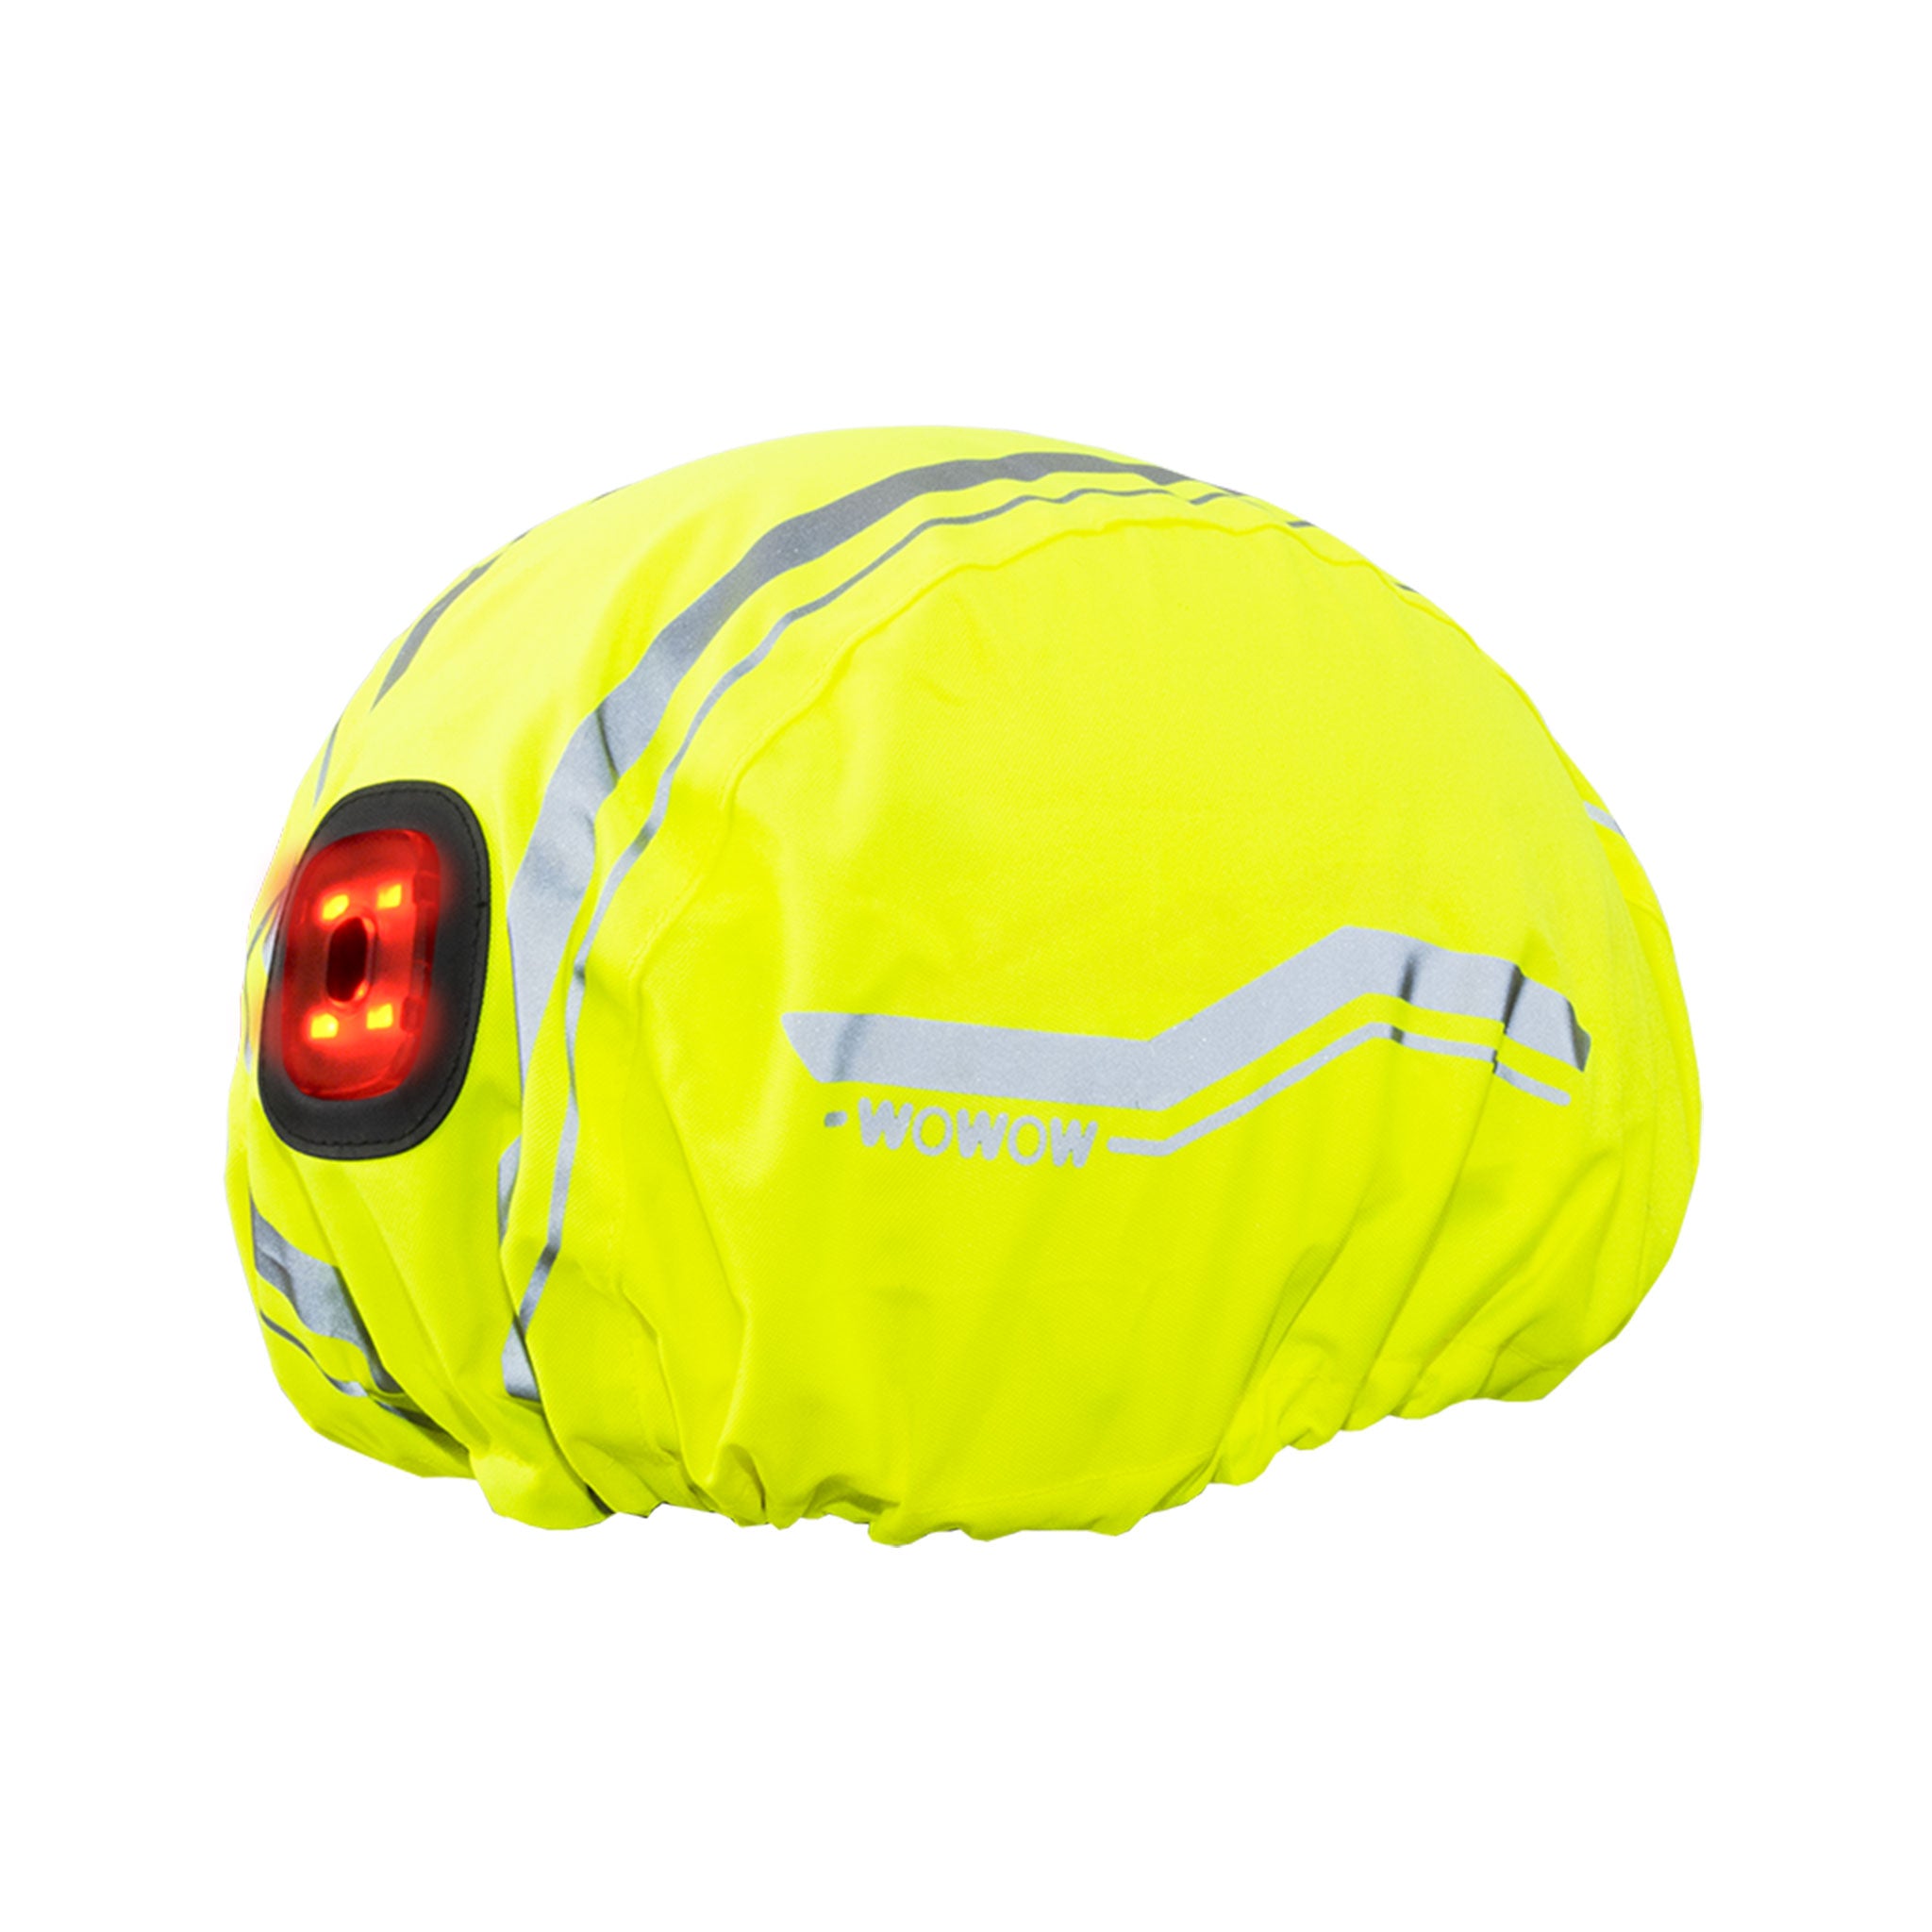 Wowow Couvre casque de vélo imperméable jaune haute visibilité